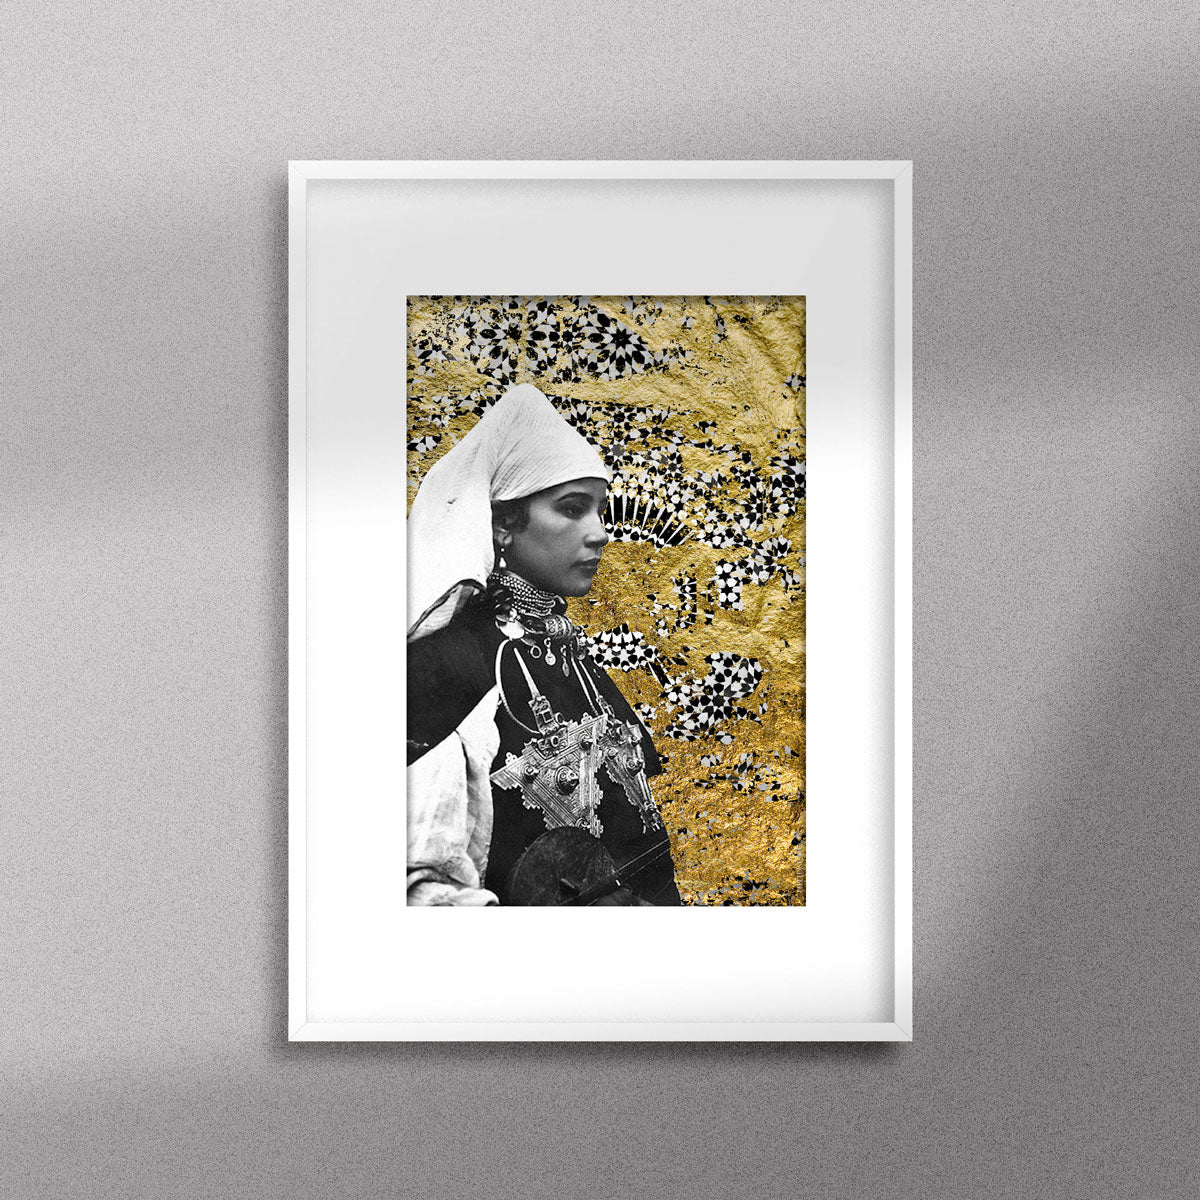 Tableau décoratif représentant un portrait d'une femme amazighe portant la fibule sur un fond de zellige marocain avec des feuilles d'or, encadré dans un cadre blanc - Format A3.